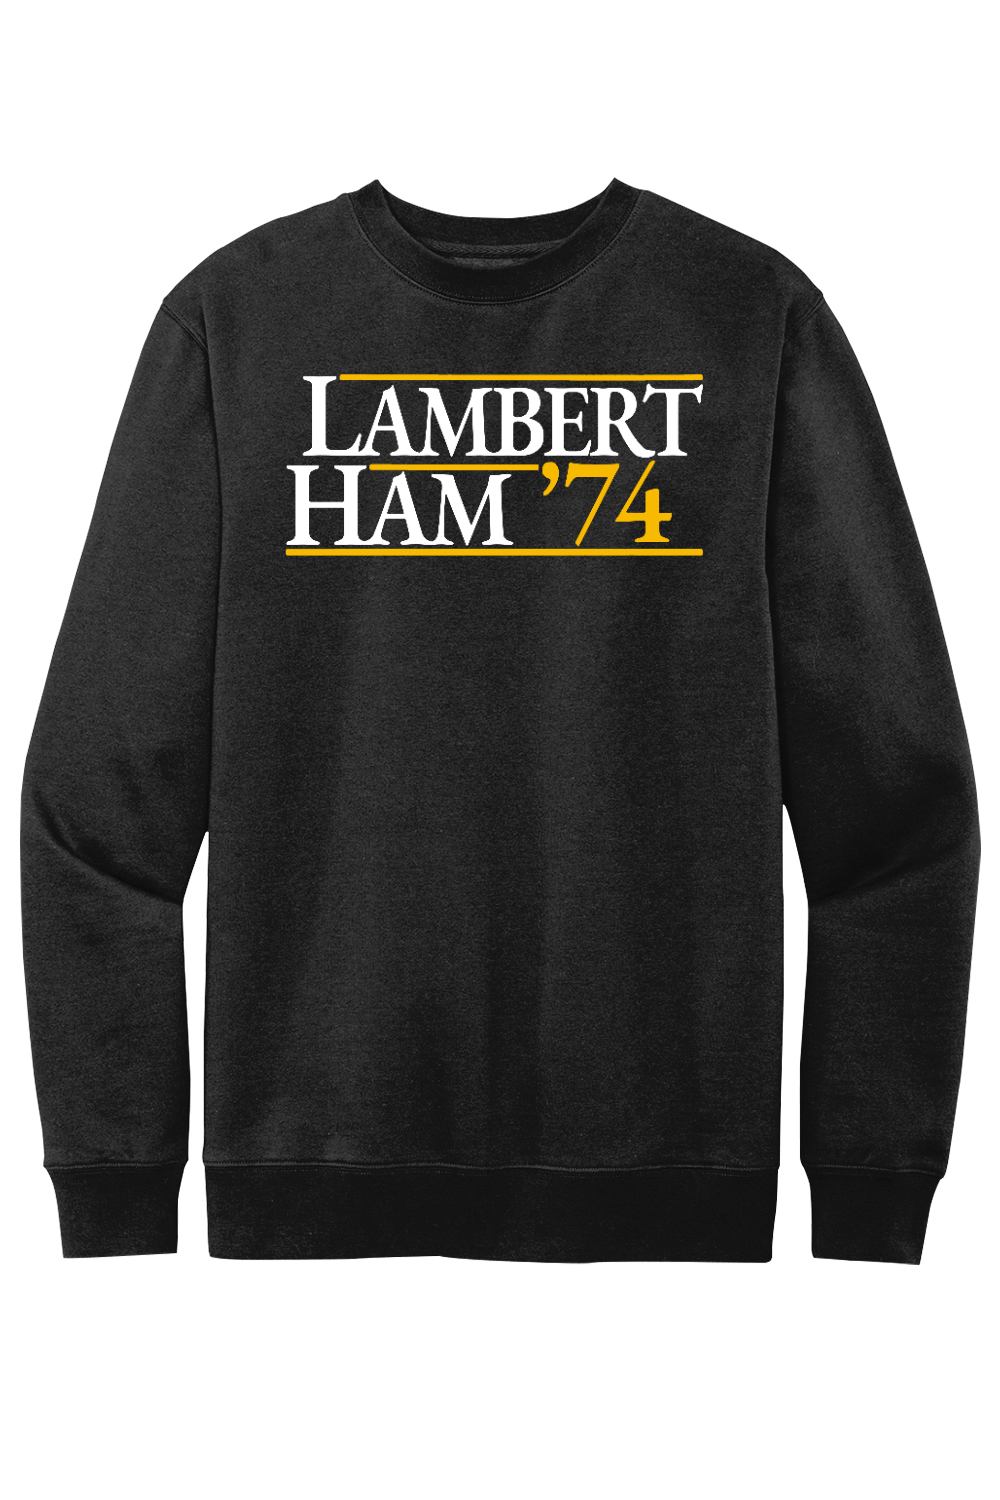 Lambert Ham '74 - Fleece Crewneck Sweatshirt - Yinzylvania